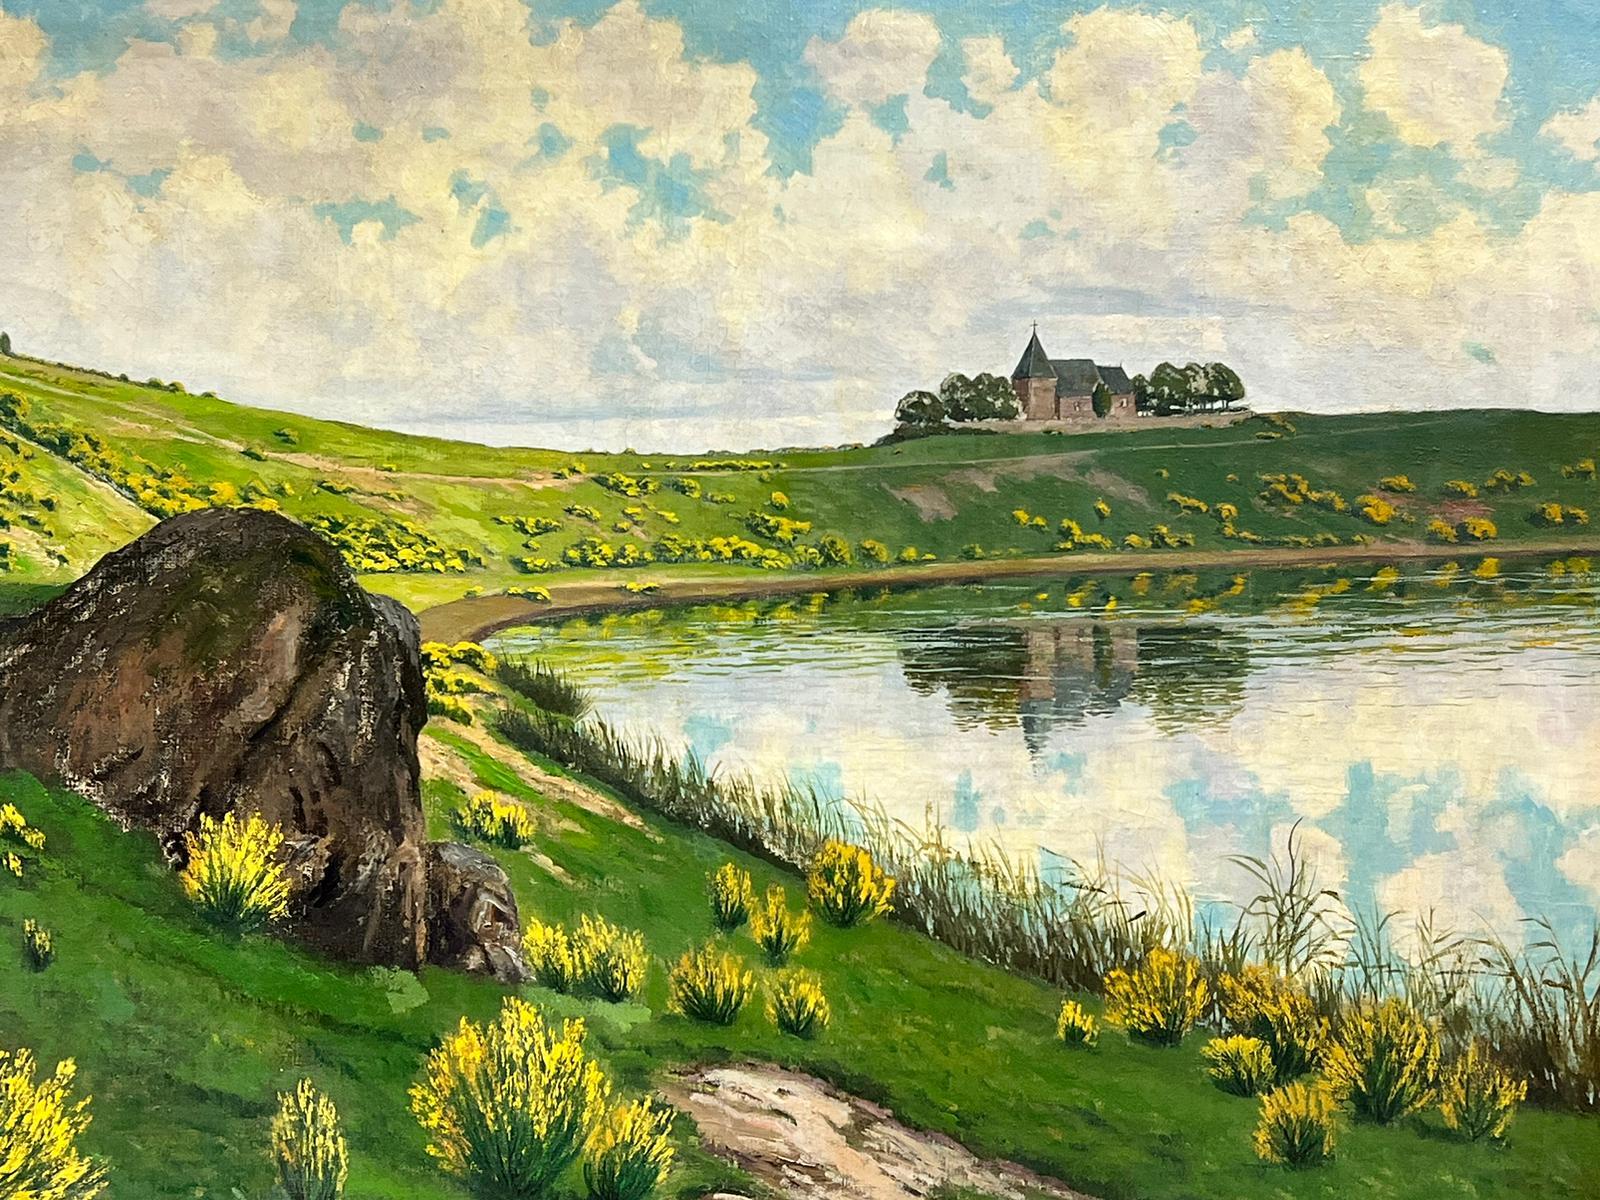 Paul Putzhofen-Hambuchen Landscape Painting - Huge Antique German Oil Painting Tranquil Landscape Old Castle/ Church by Lake